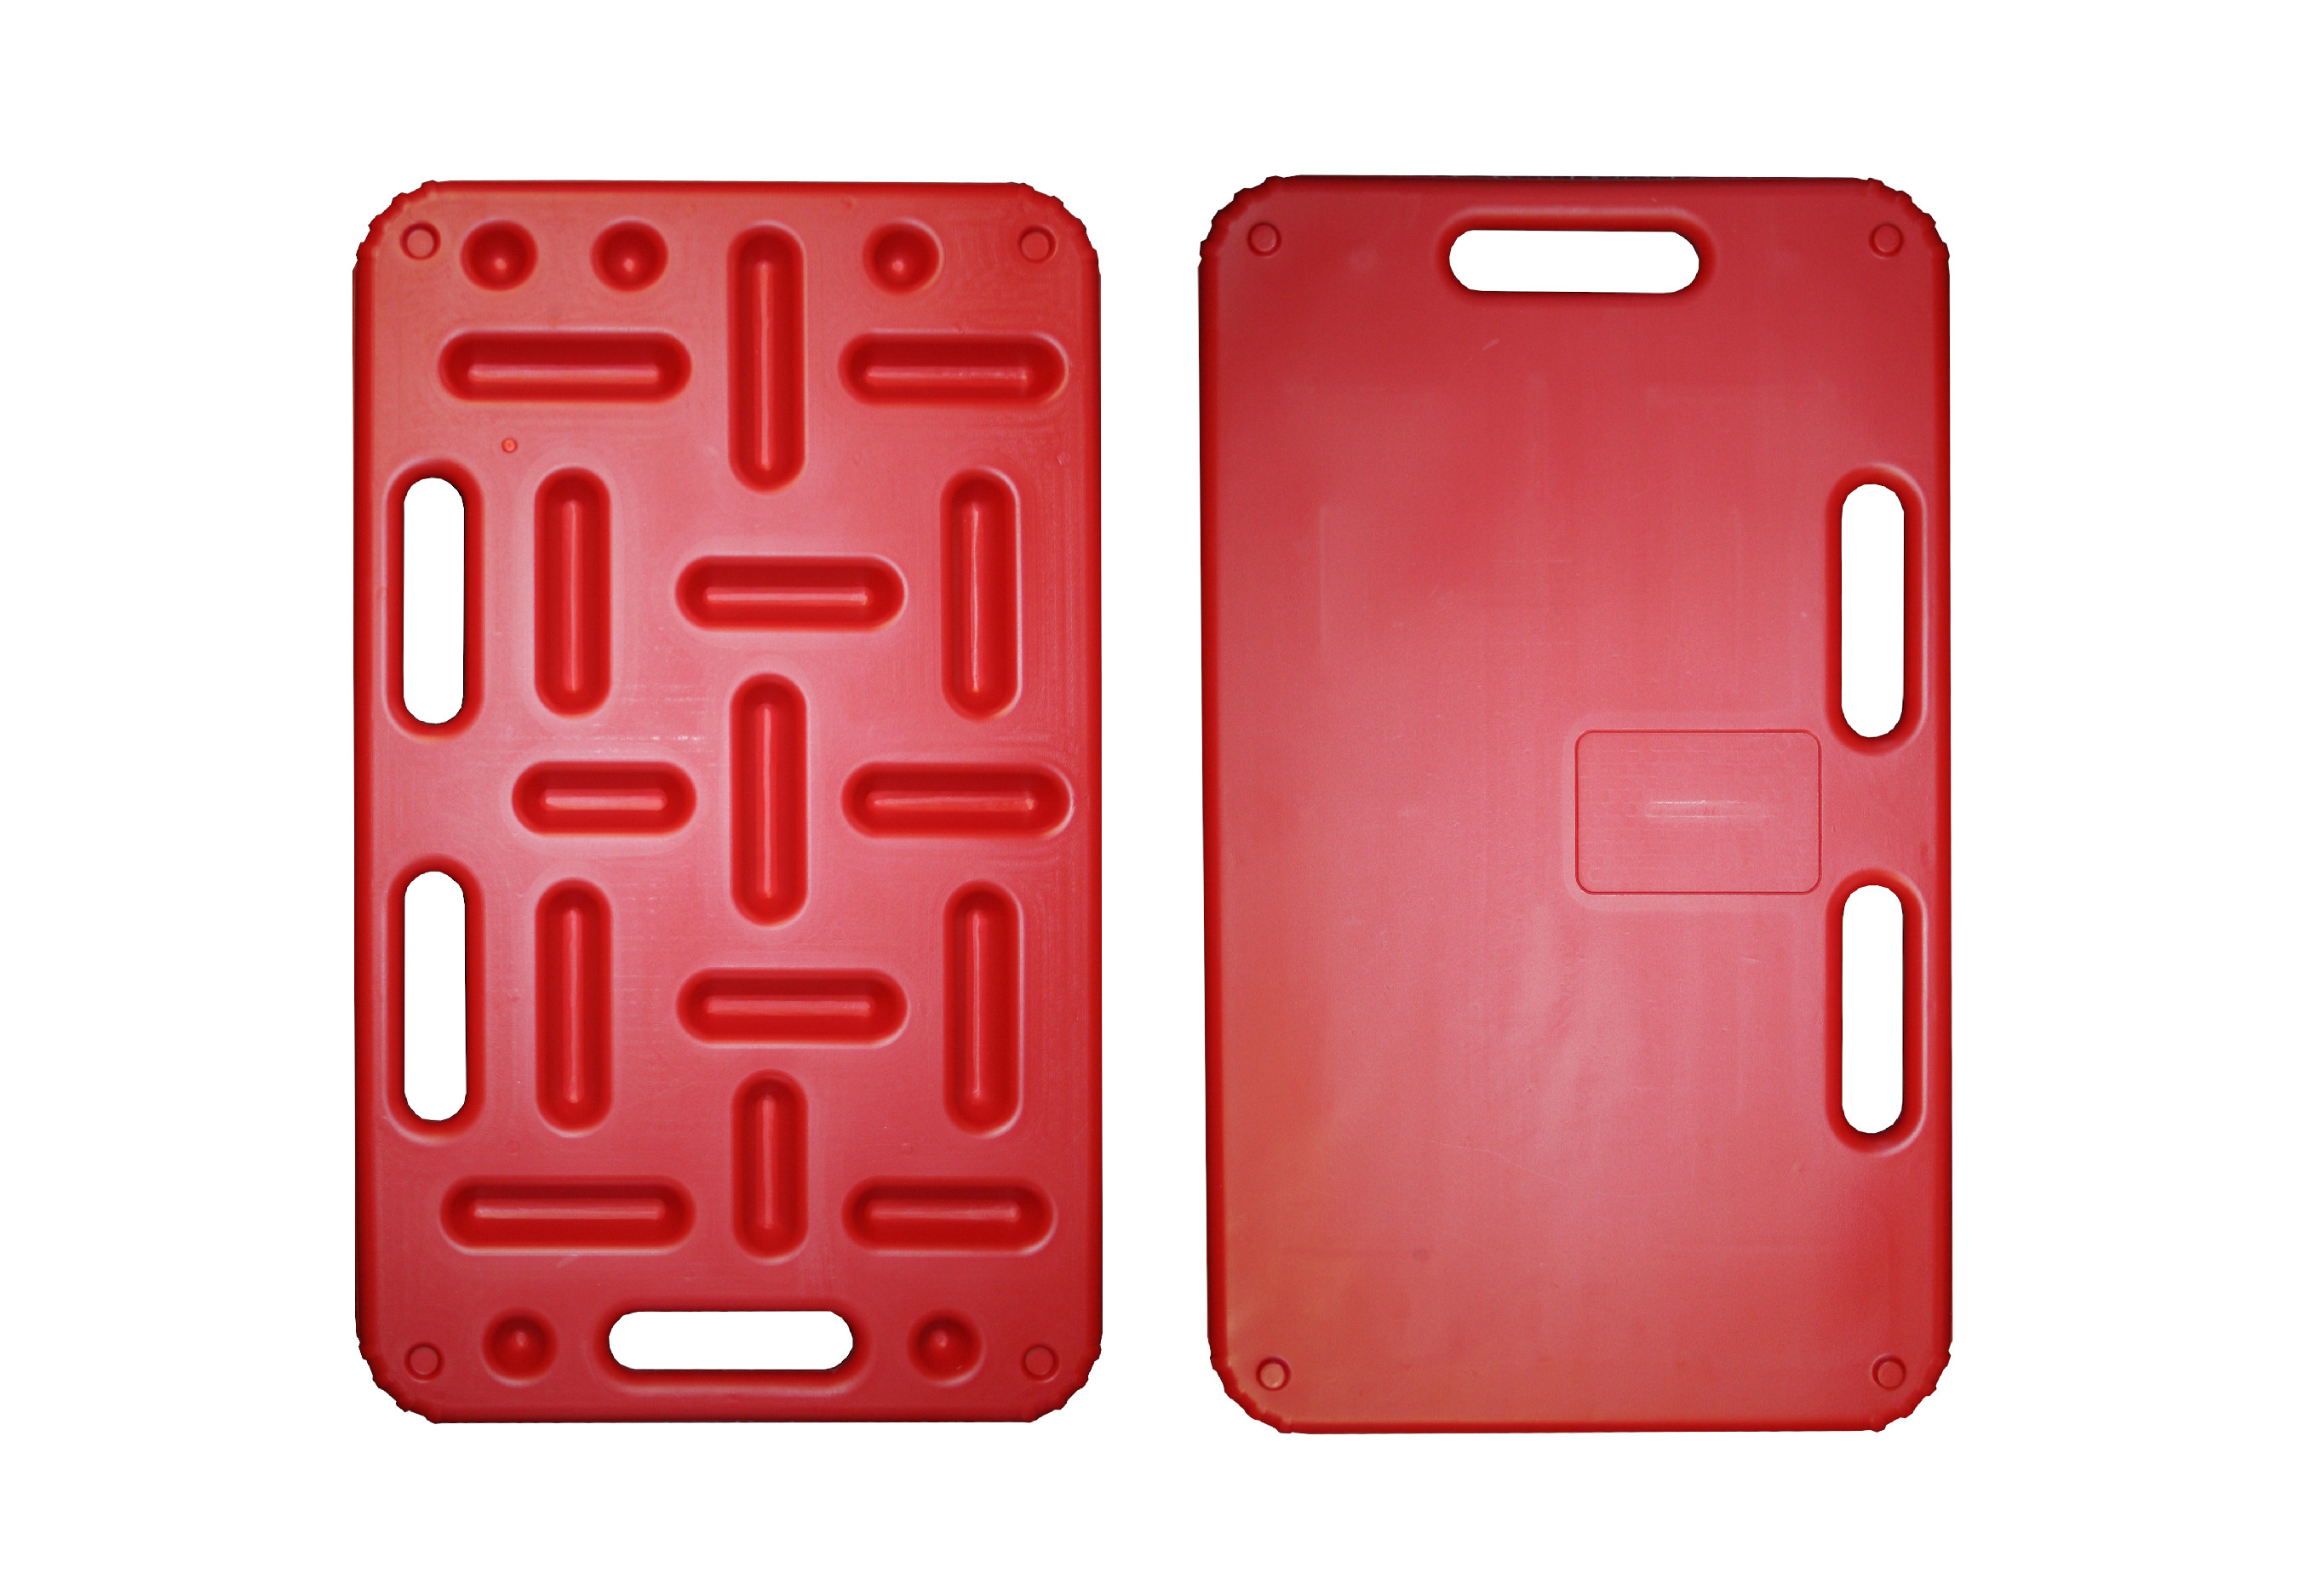 Zábrana malá dělící a naháněcí STRONG, 74 x 45 cm, červená